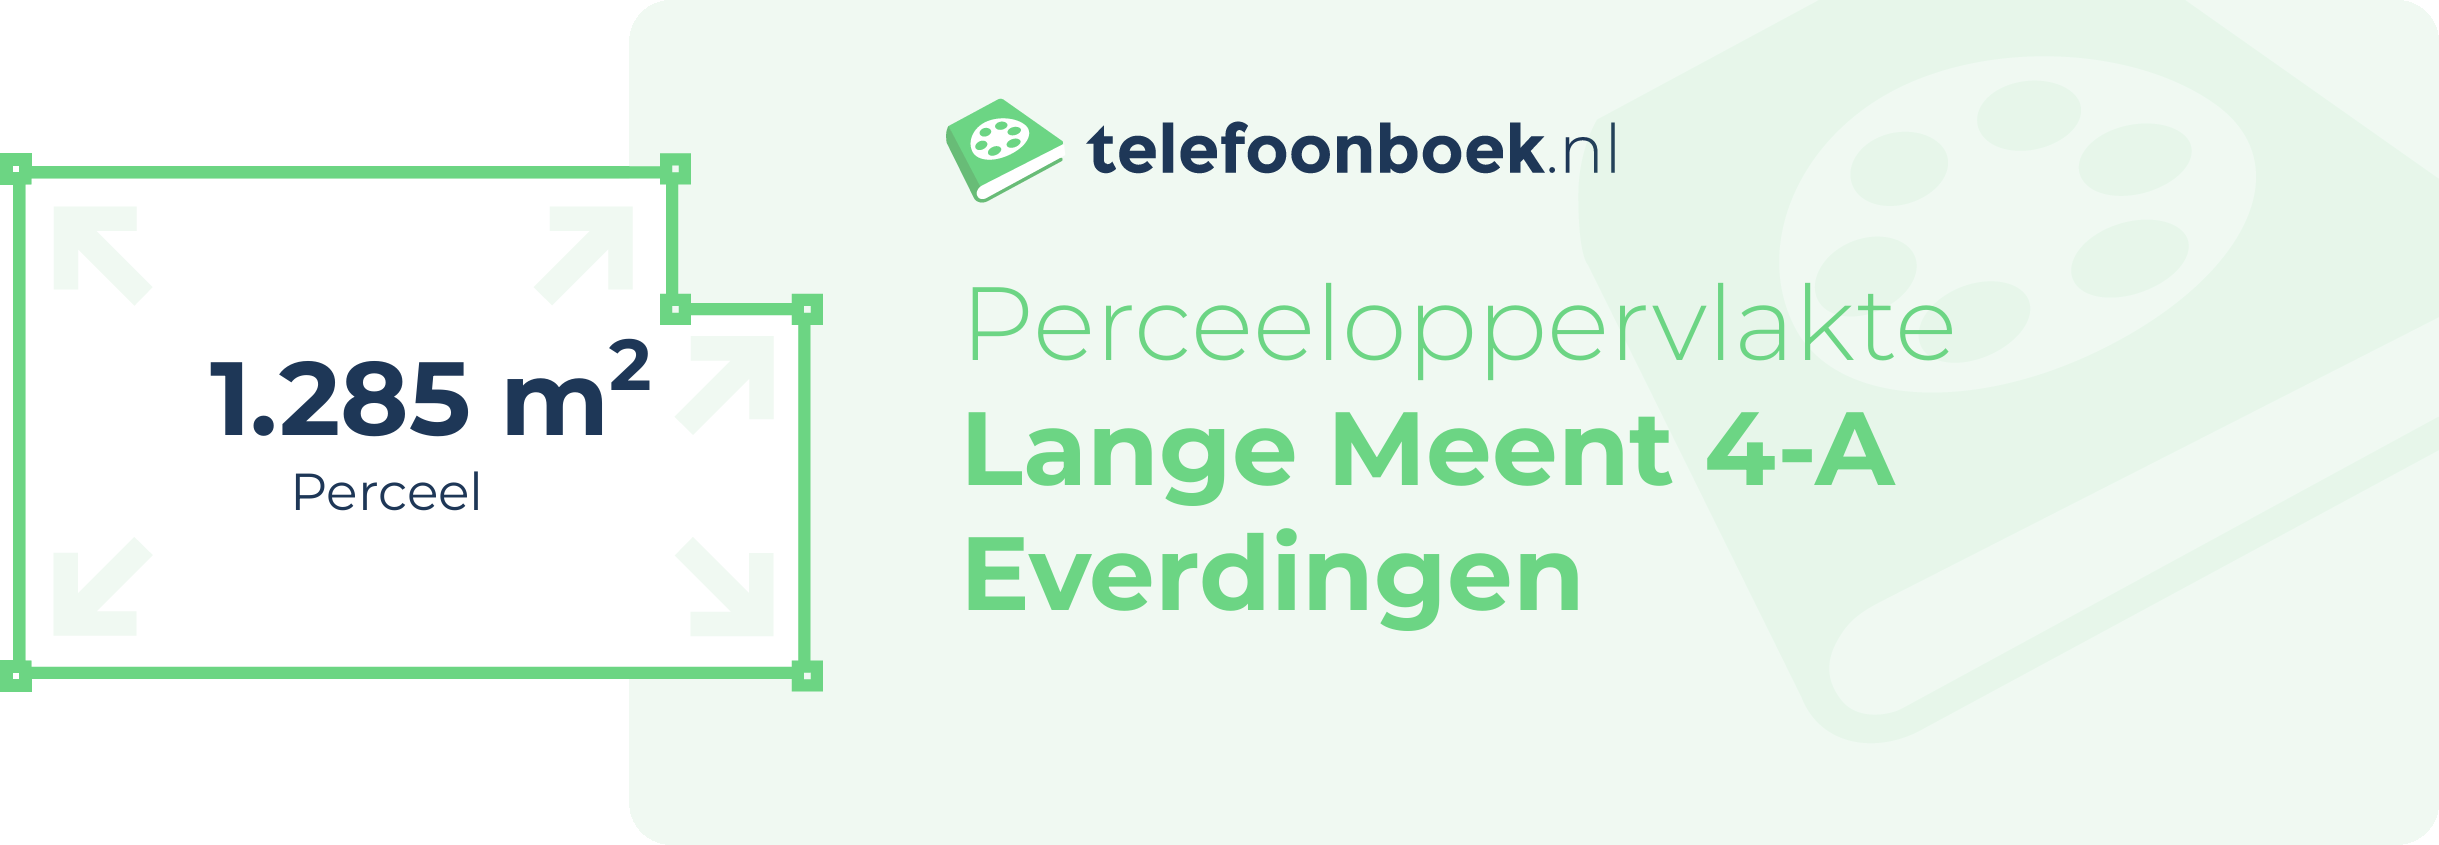 Perceeloppervlakte Lange Meent 4-A Everdingen